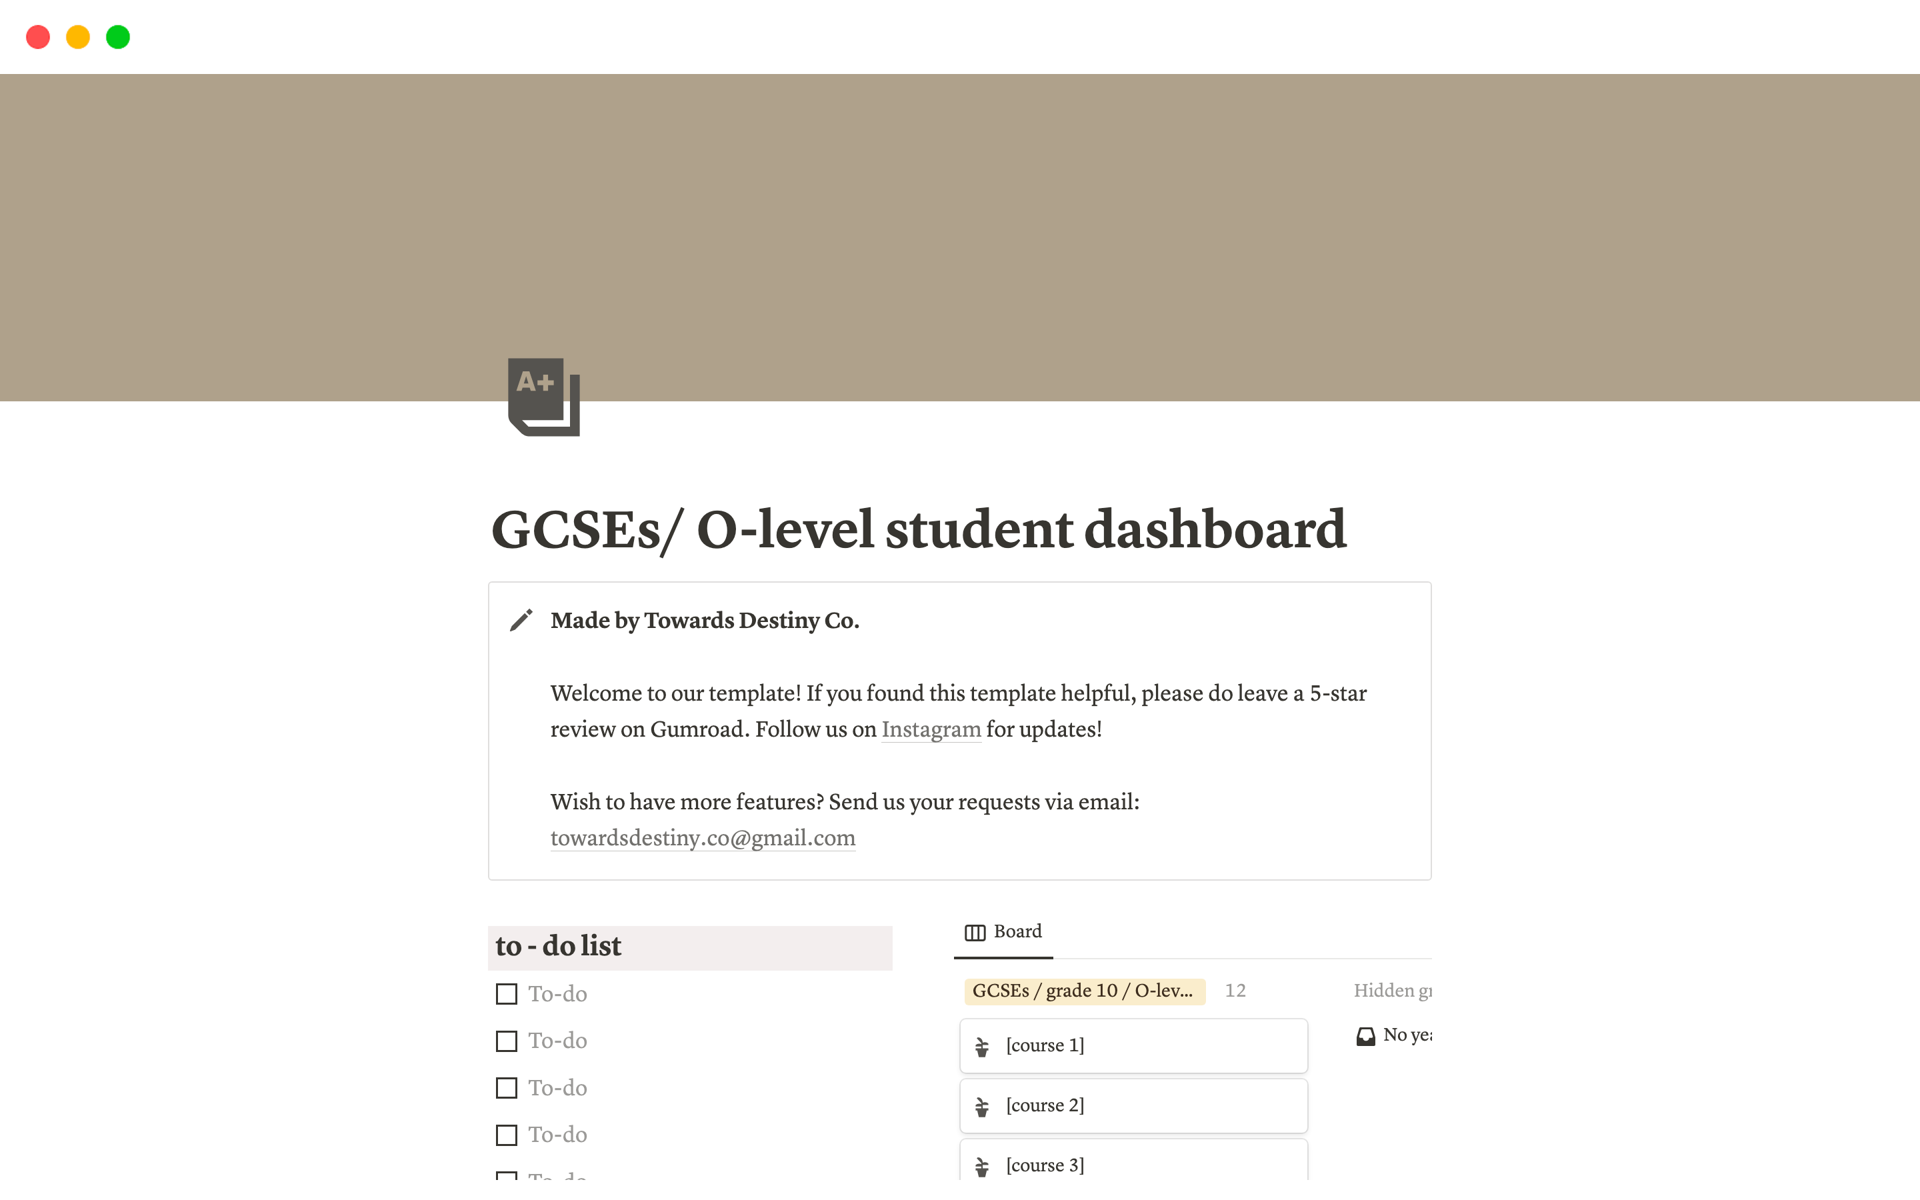 Vista previa de una plantilla para GCSEs/ O-level student dashboard